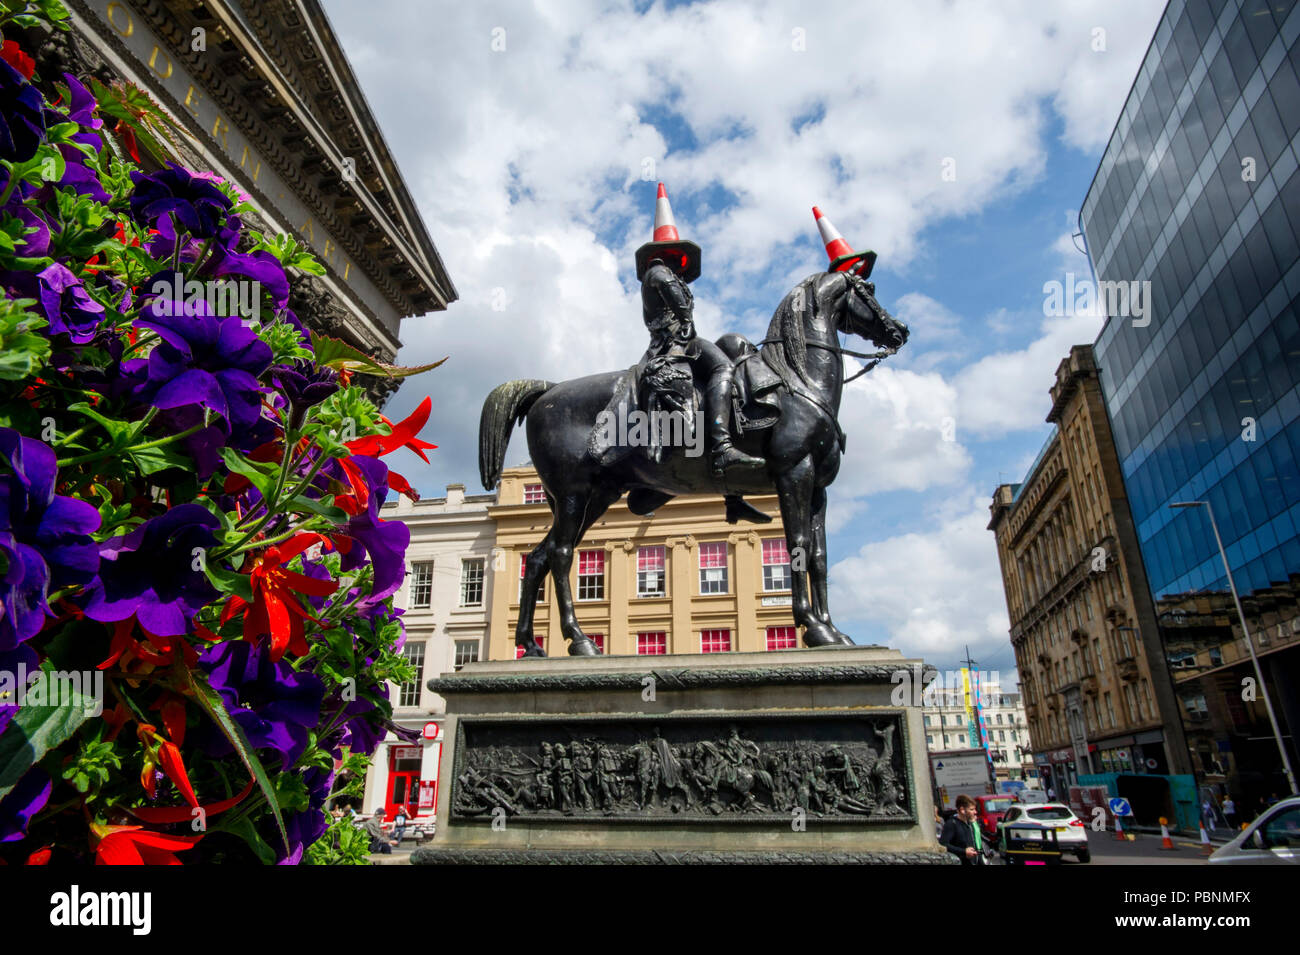 Der Pferdesport Wellington Statue ist eine Statue von Arthur Wellesley, 1. Herzog von Wellington, auf der Royal Exchange Square, Glasgow, Schottland. Stockfoto